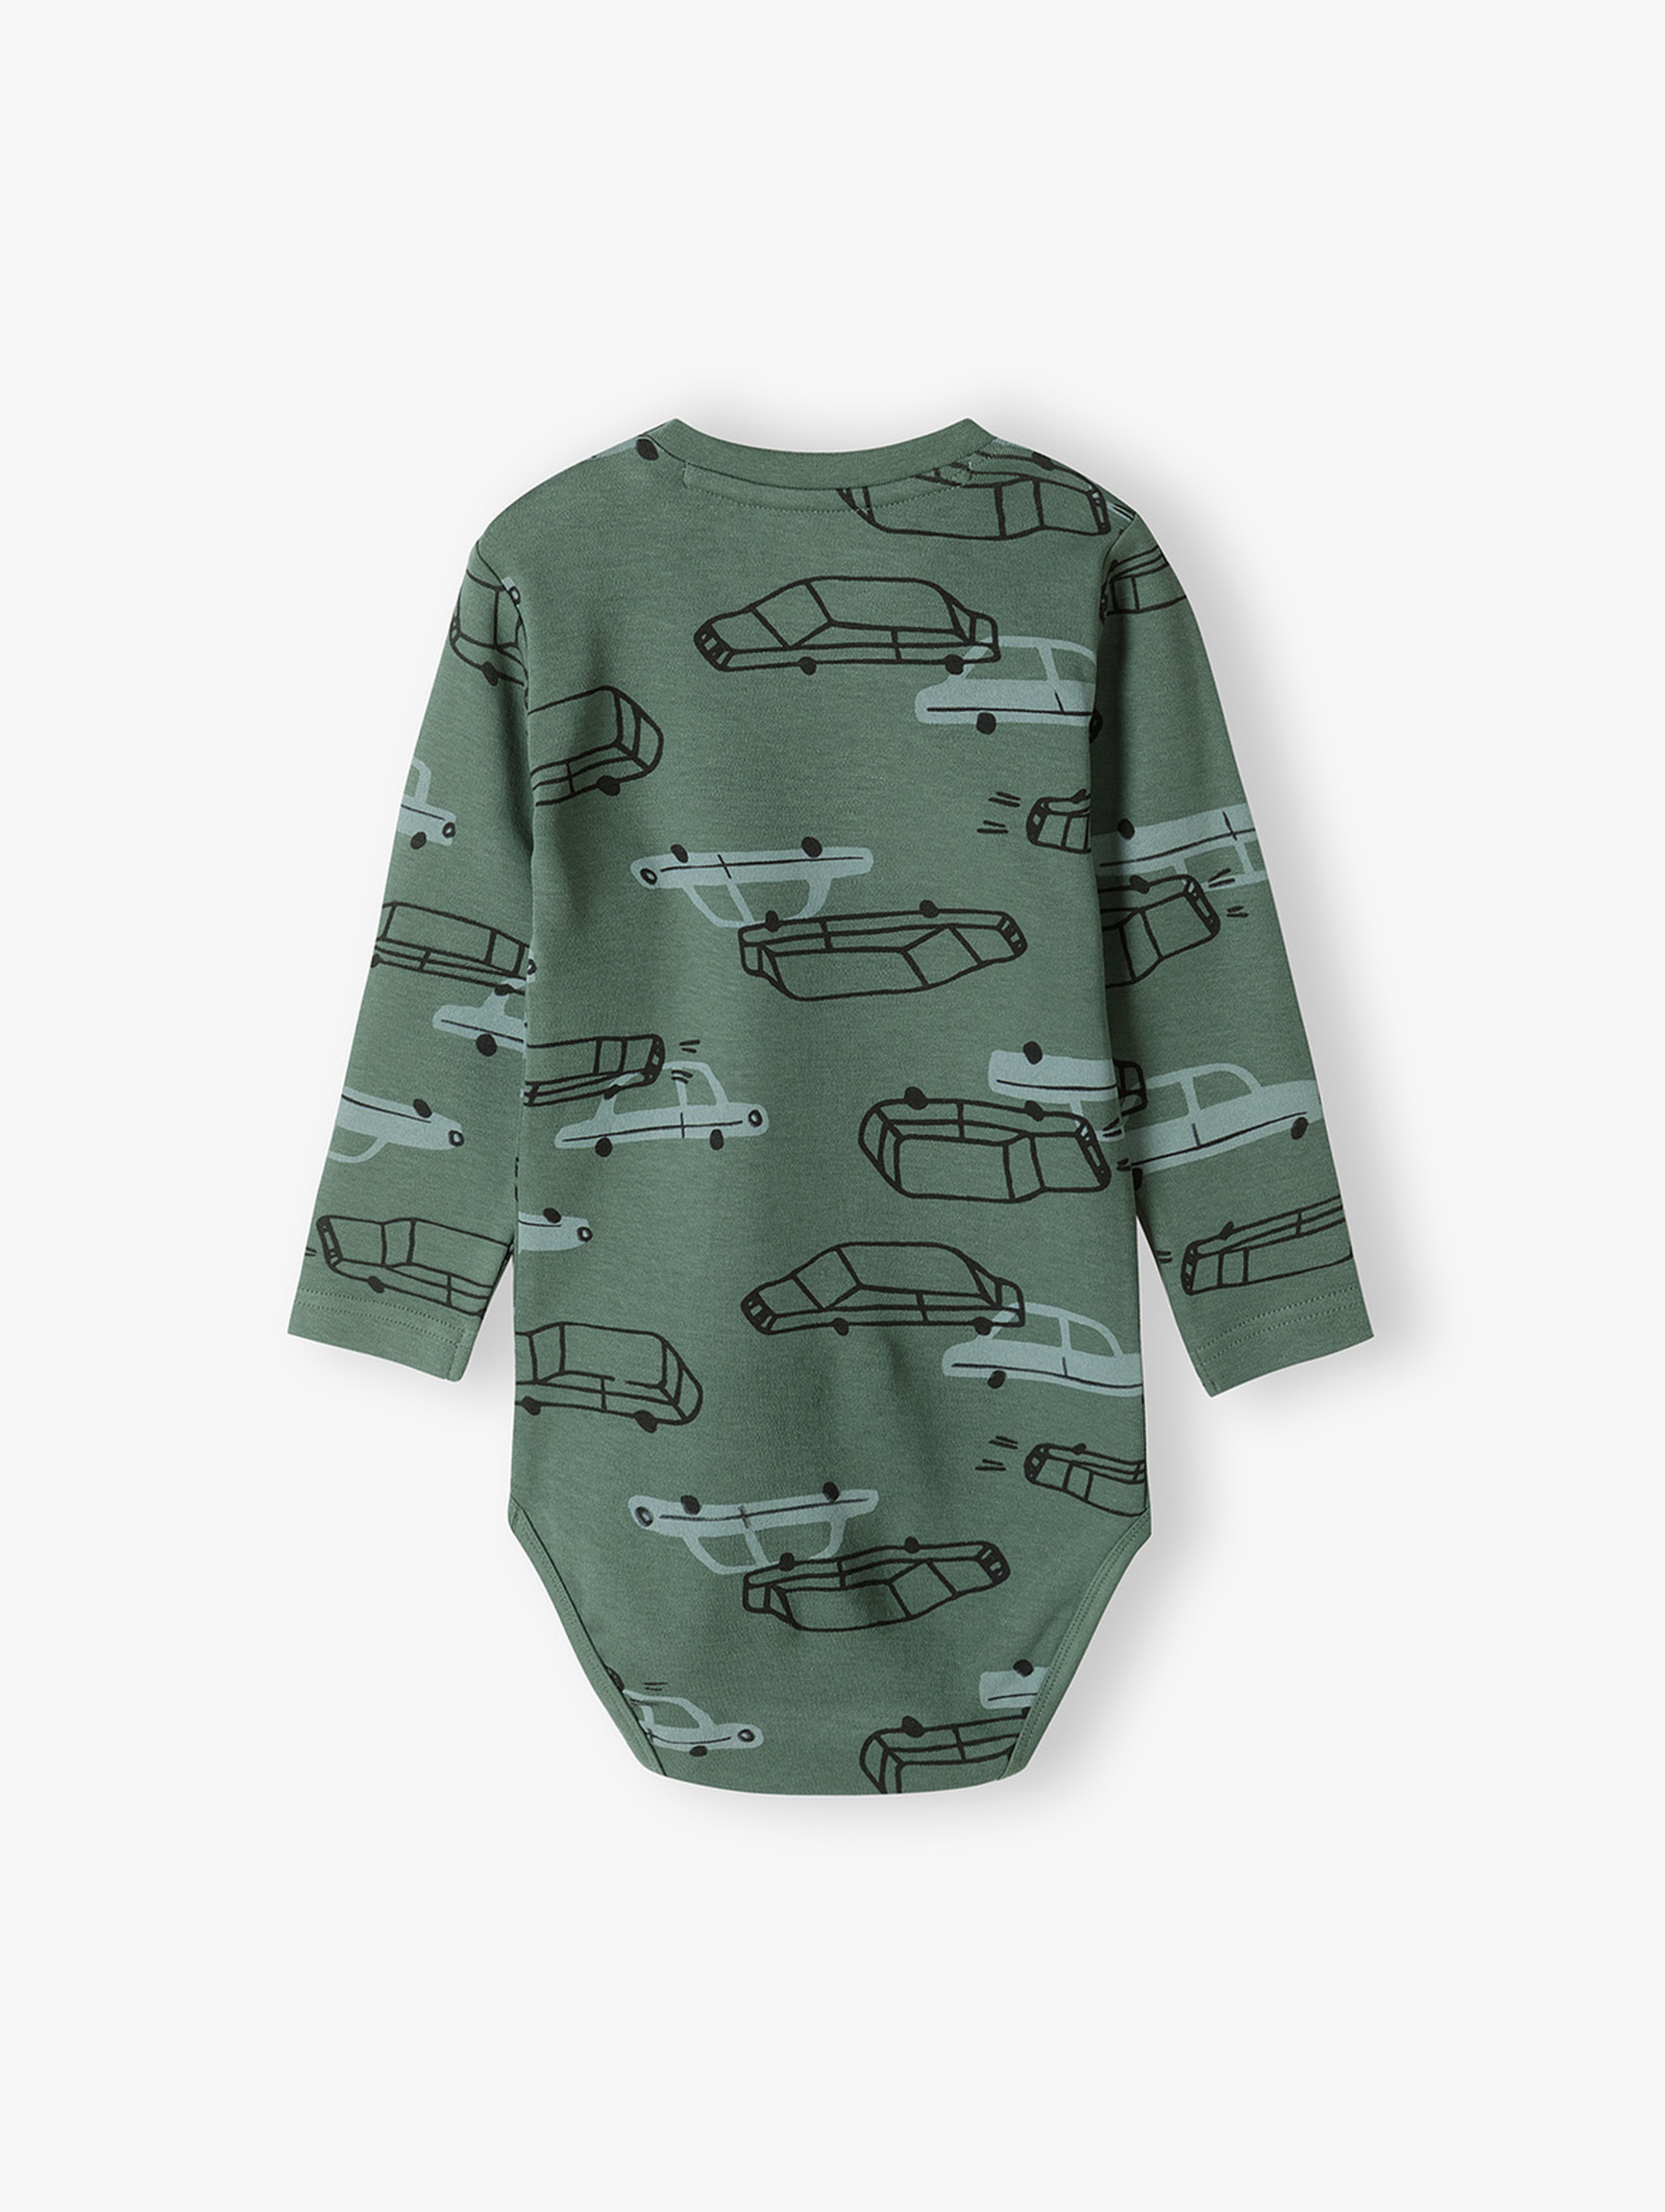 Zielone bawełniane body niemowlęce w samochody